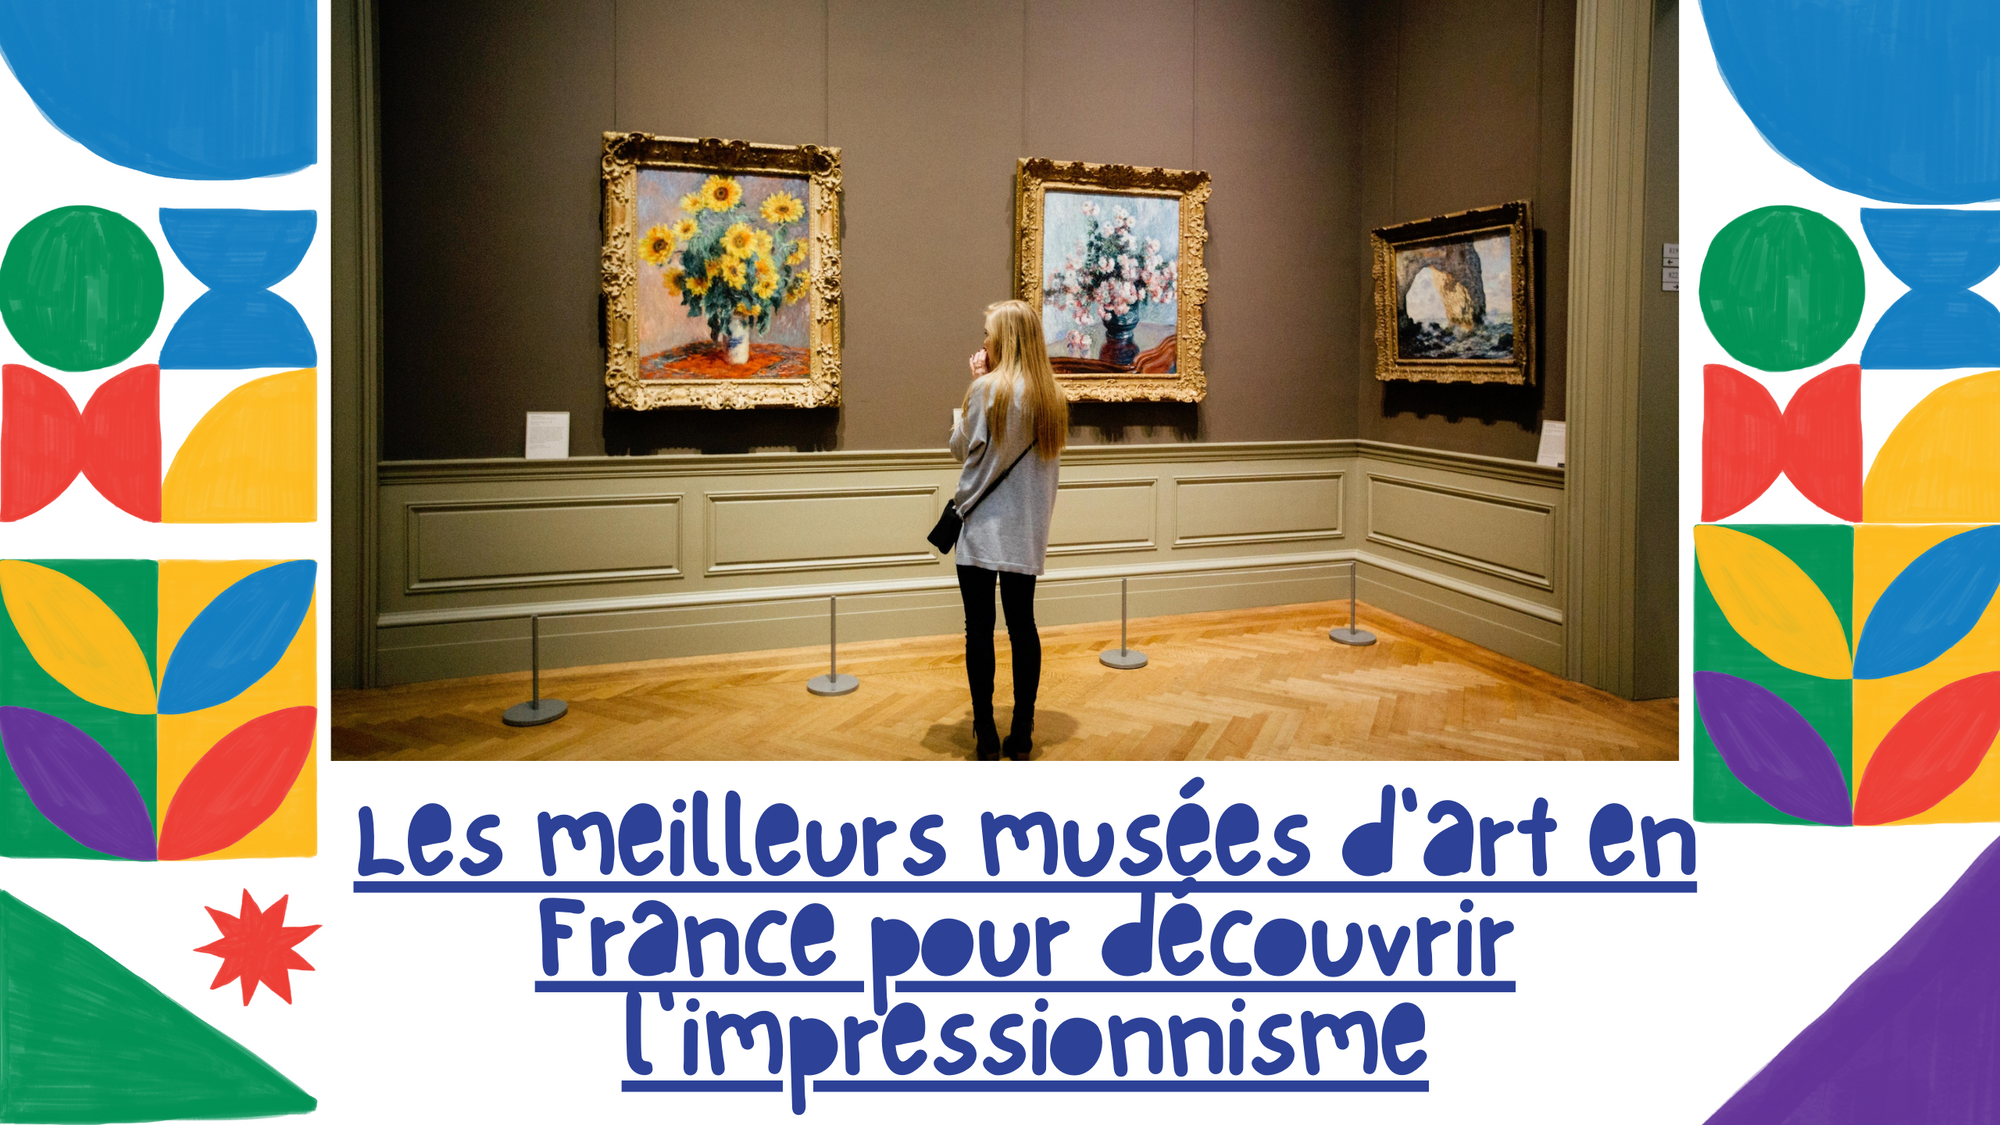 Quel sont les meilleurs musées d'arts en France pour voir l'impressionnisme ?